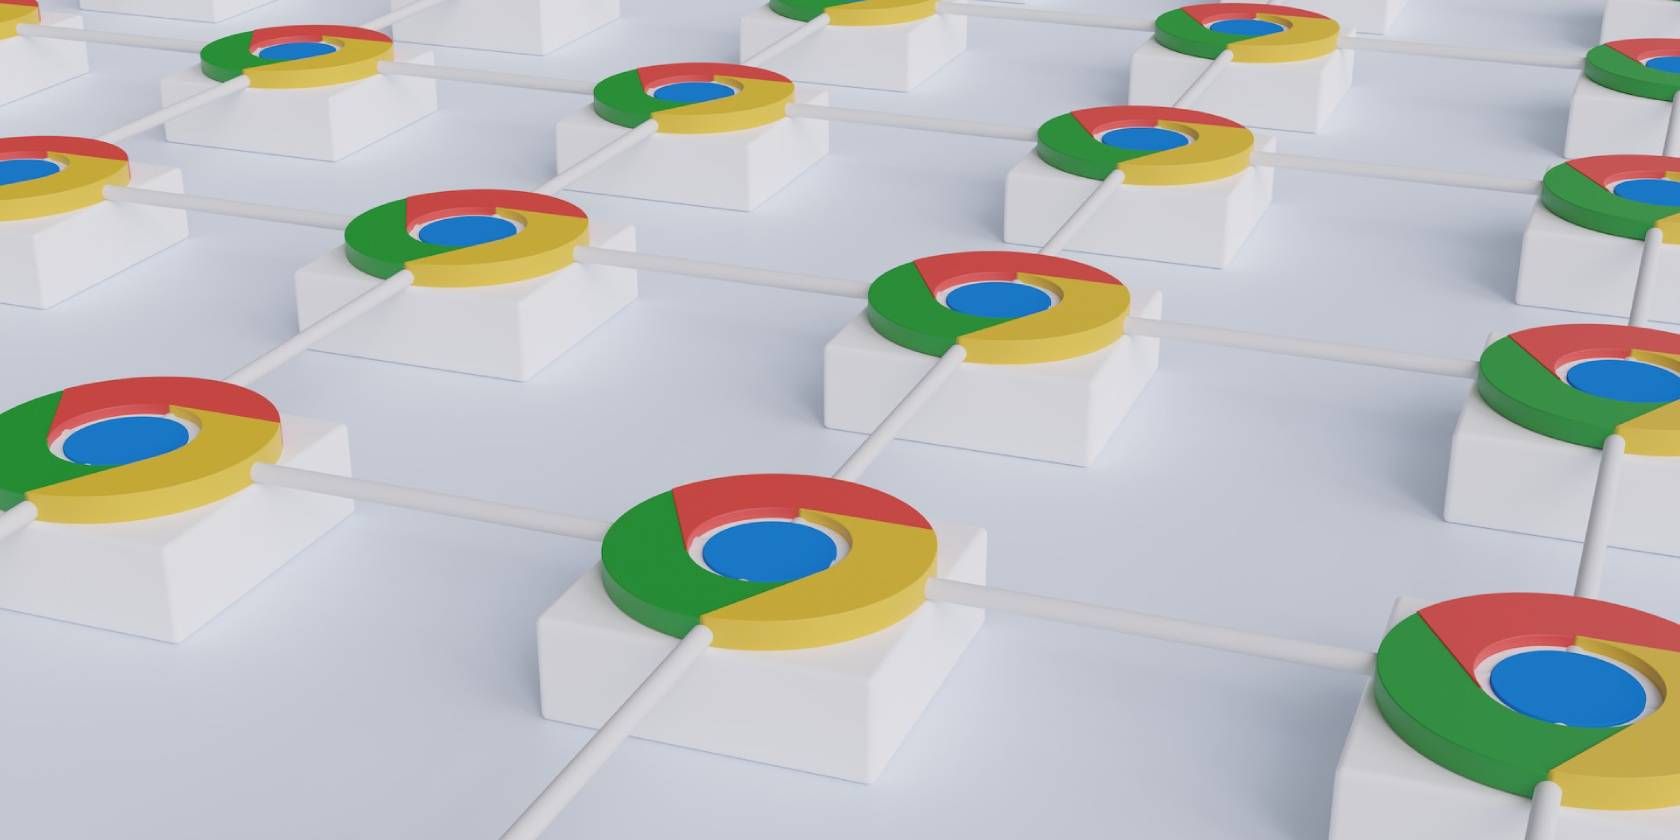 Multiple Google Chrome logos on white surface